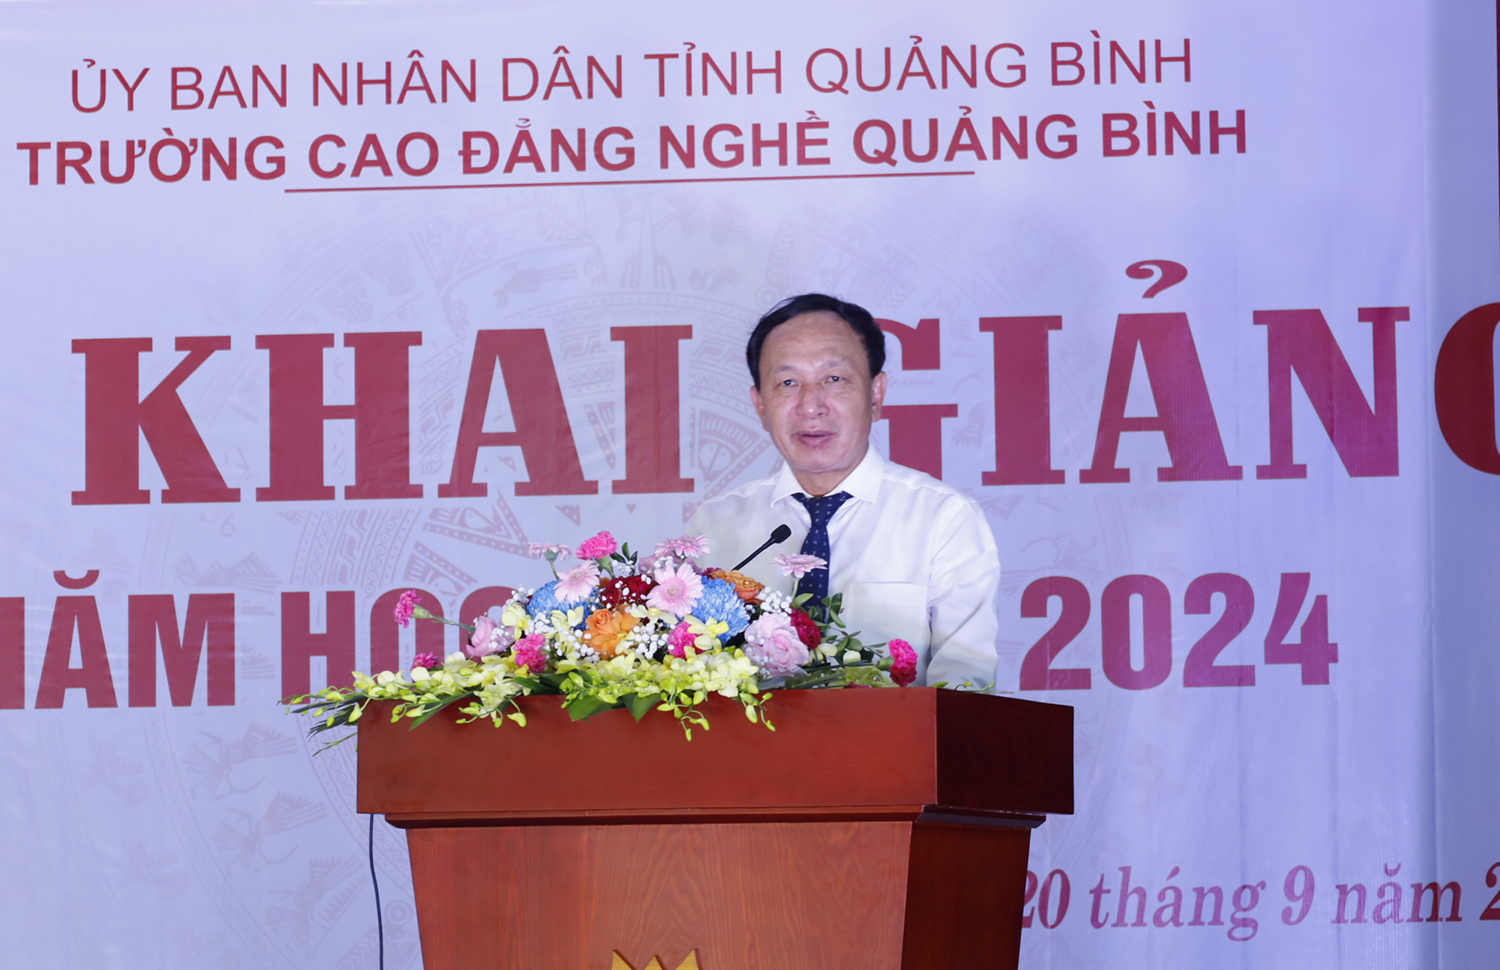 Đồng chí Phó Bí thư Thường trực Tỉnh ủy Trần Hải Châu phát biểu tại buổi lễ khai giảng.